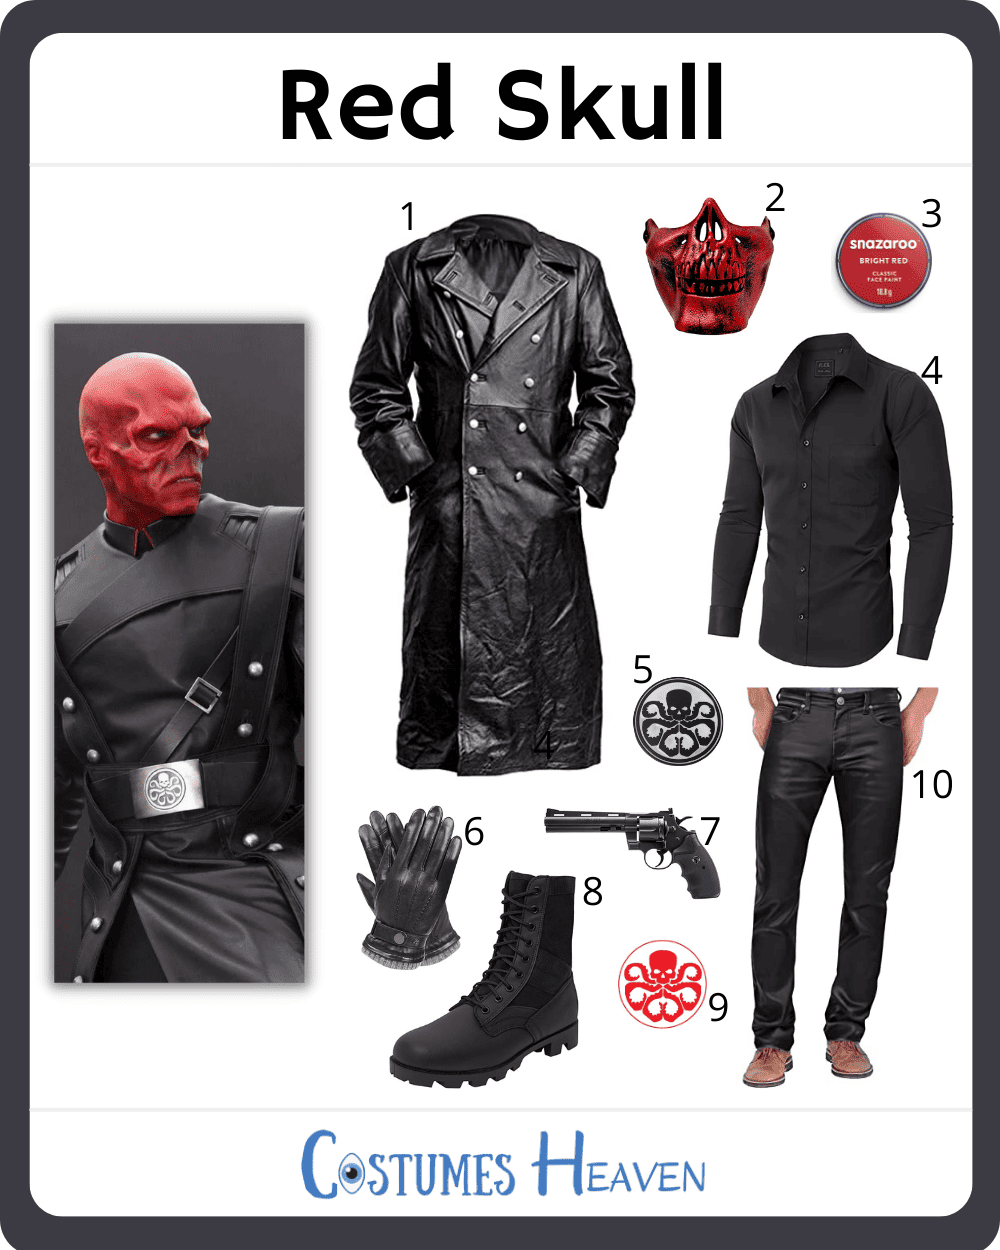 Red Skull Costume